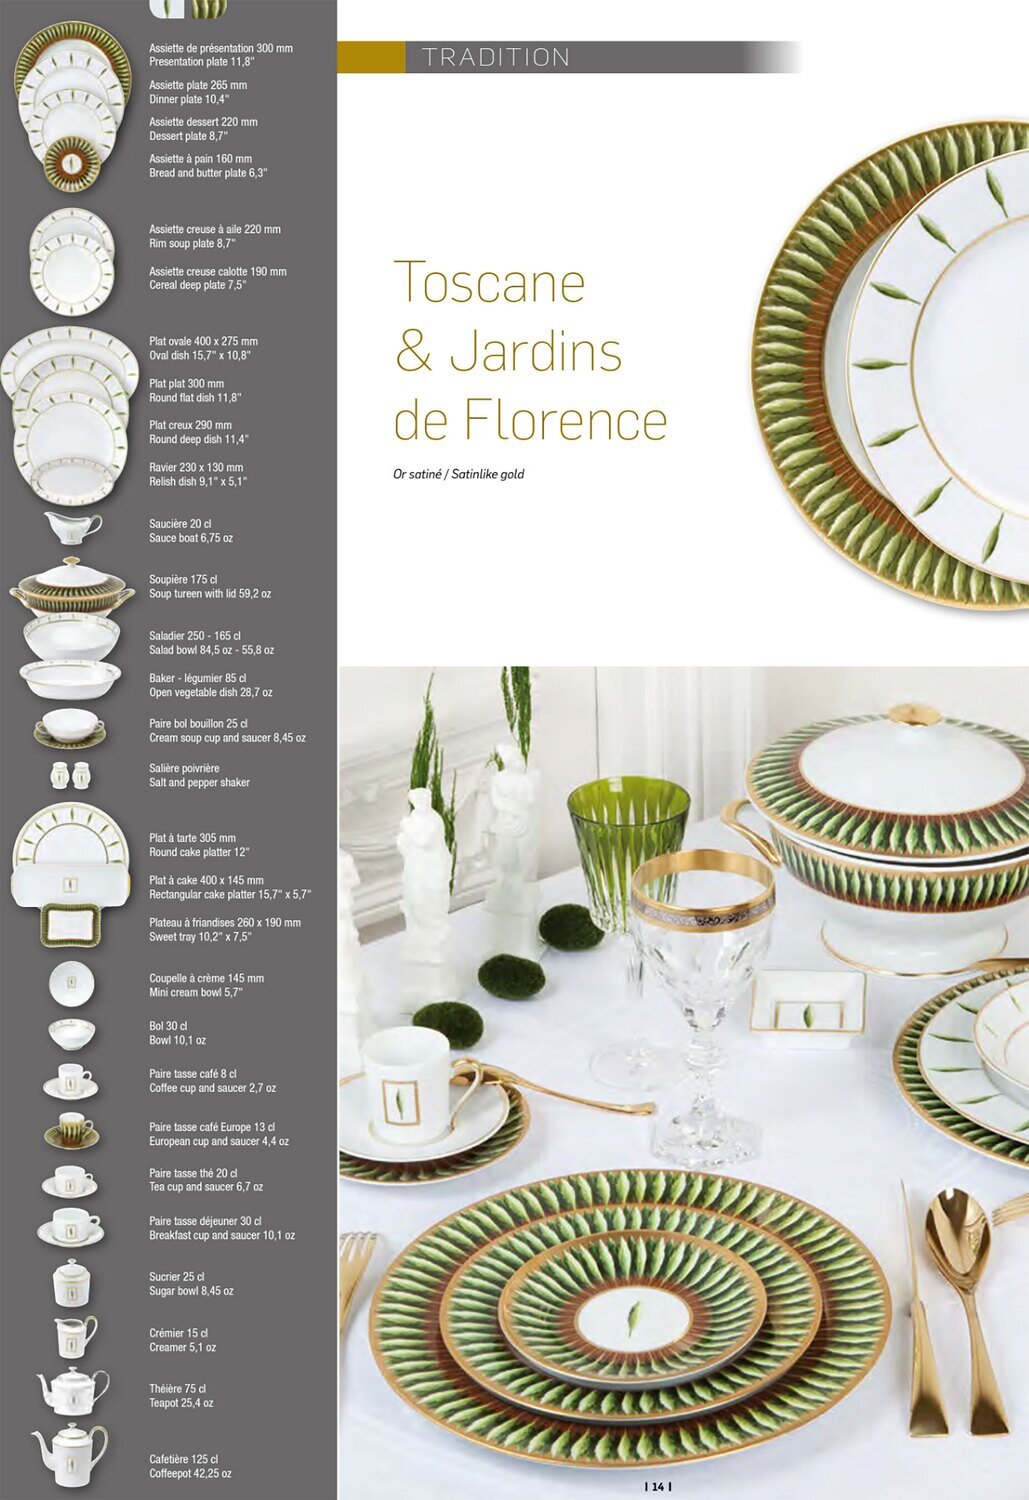 Deshoulieres Toscane Round Tea Pot THR-RI6768